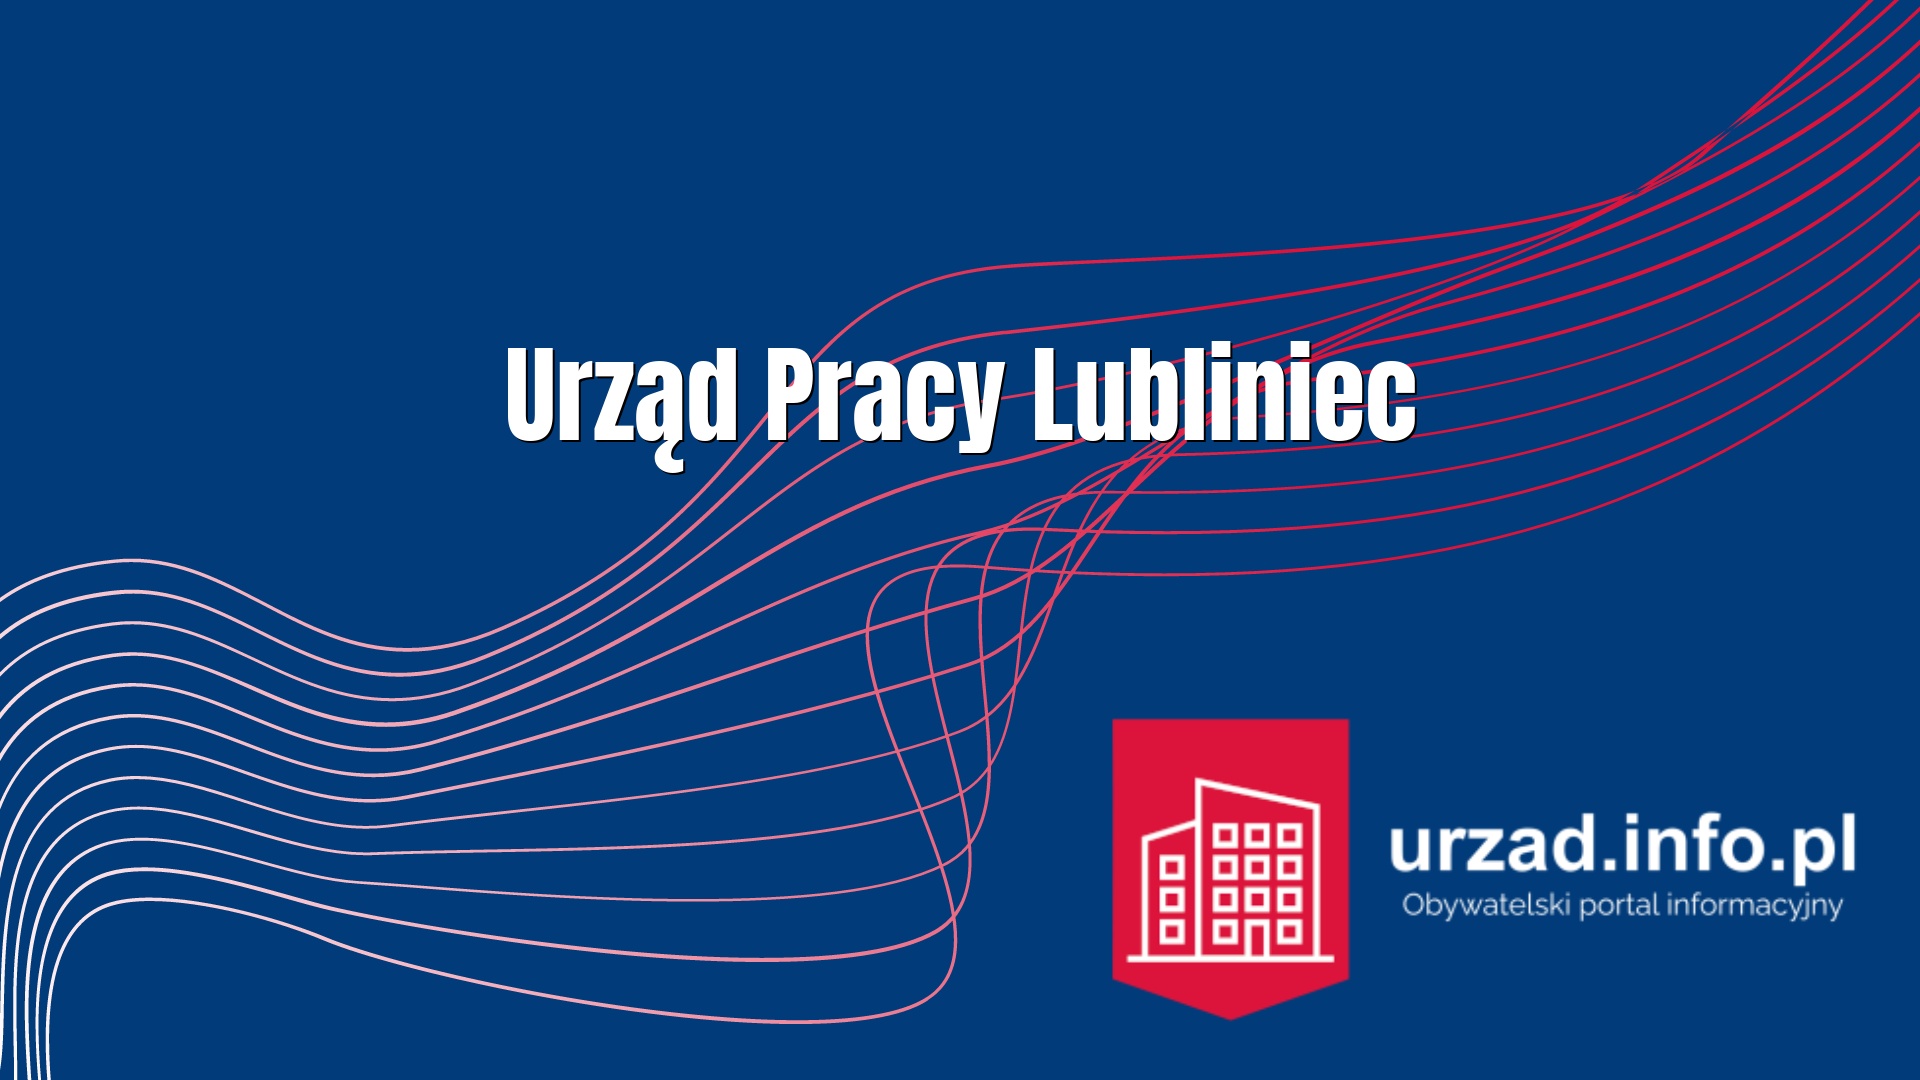 PUP Lubliniec – Urząd Pracy Lubliniec